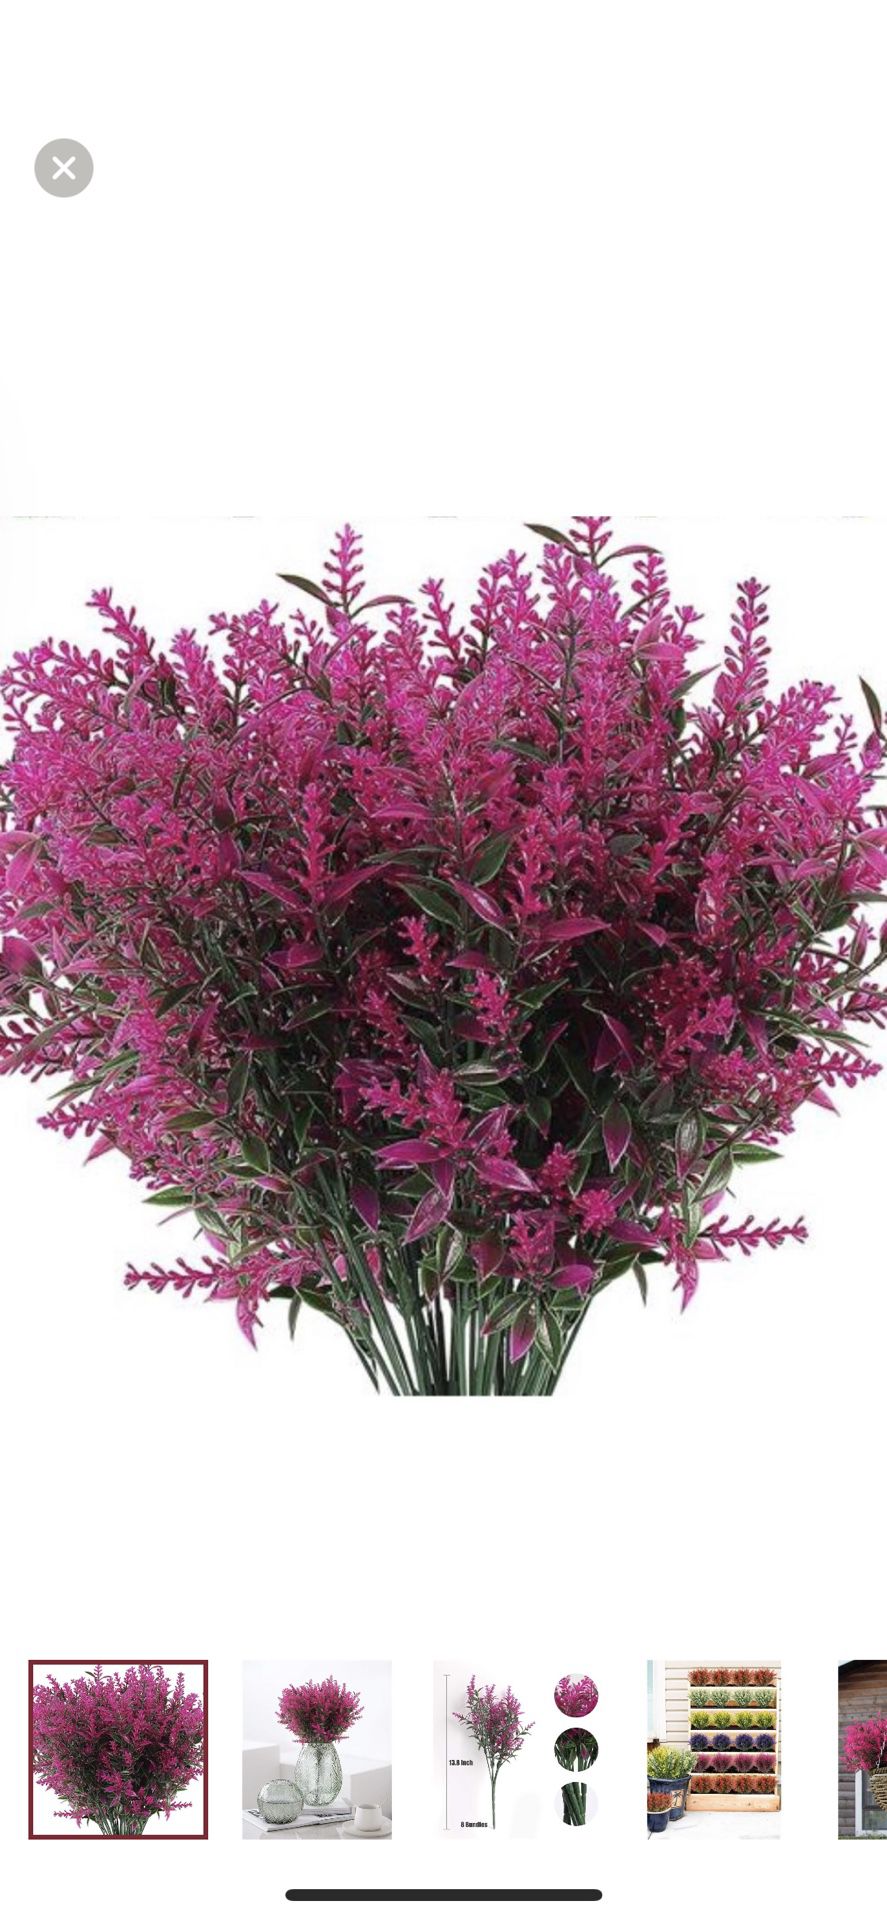 8 Bundles Artificial Flowers Fake Outdoor Plants Faux UV Resistant Lavender